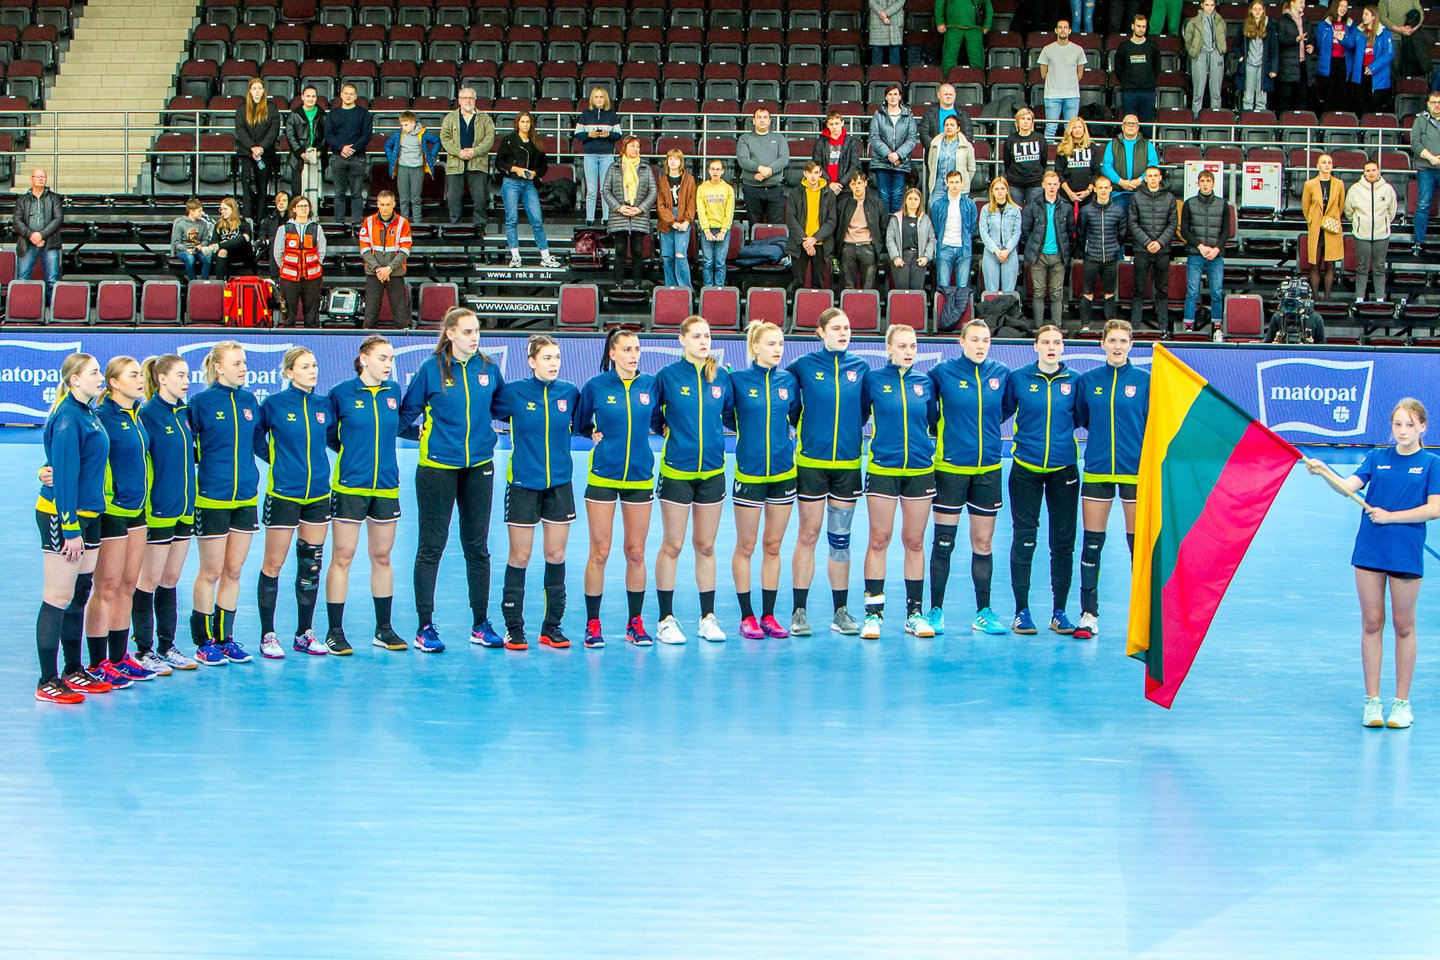  Europos čempionato atrankos turnyrą Lietuvos rankininkės baigė pralaimėjimu lenkėms<br> E. Šemioto nuotr.